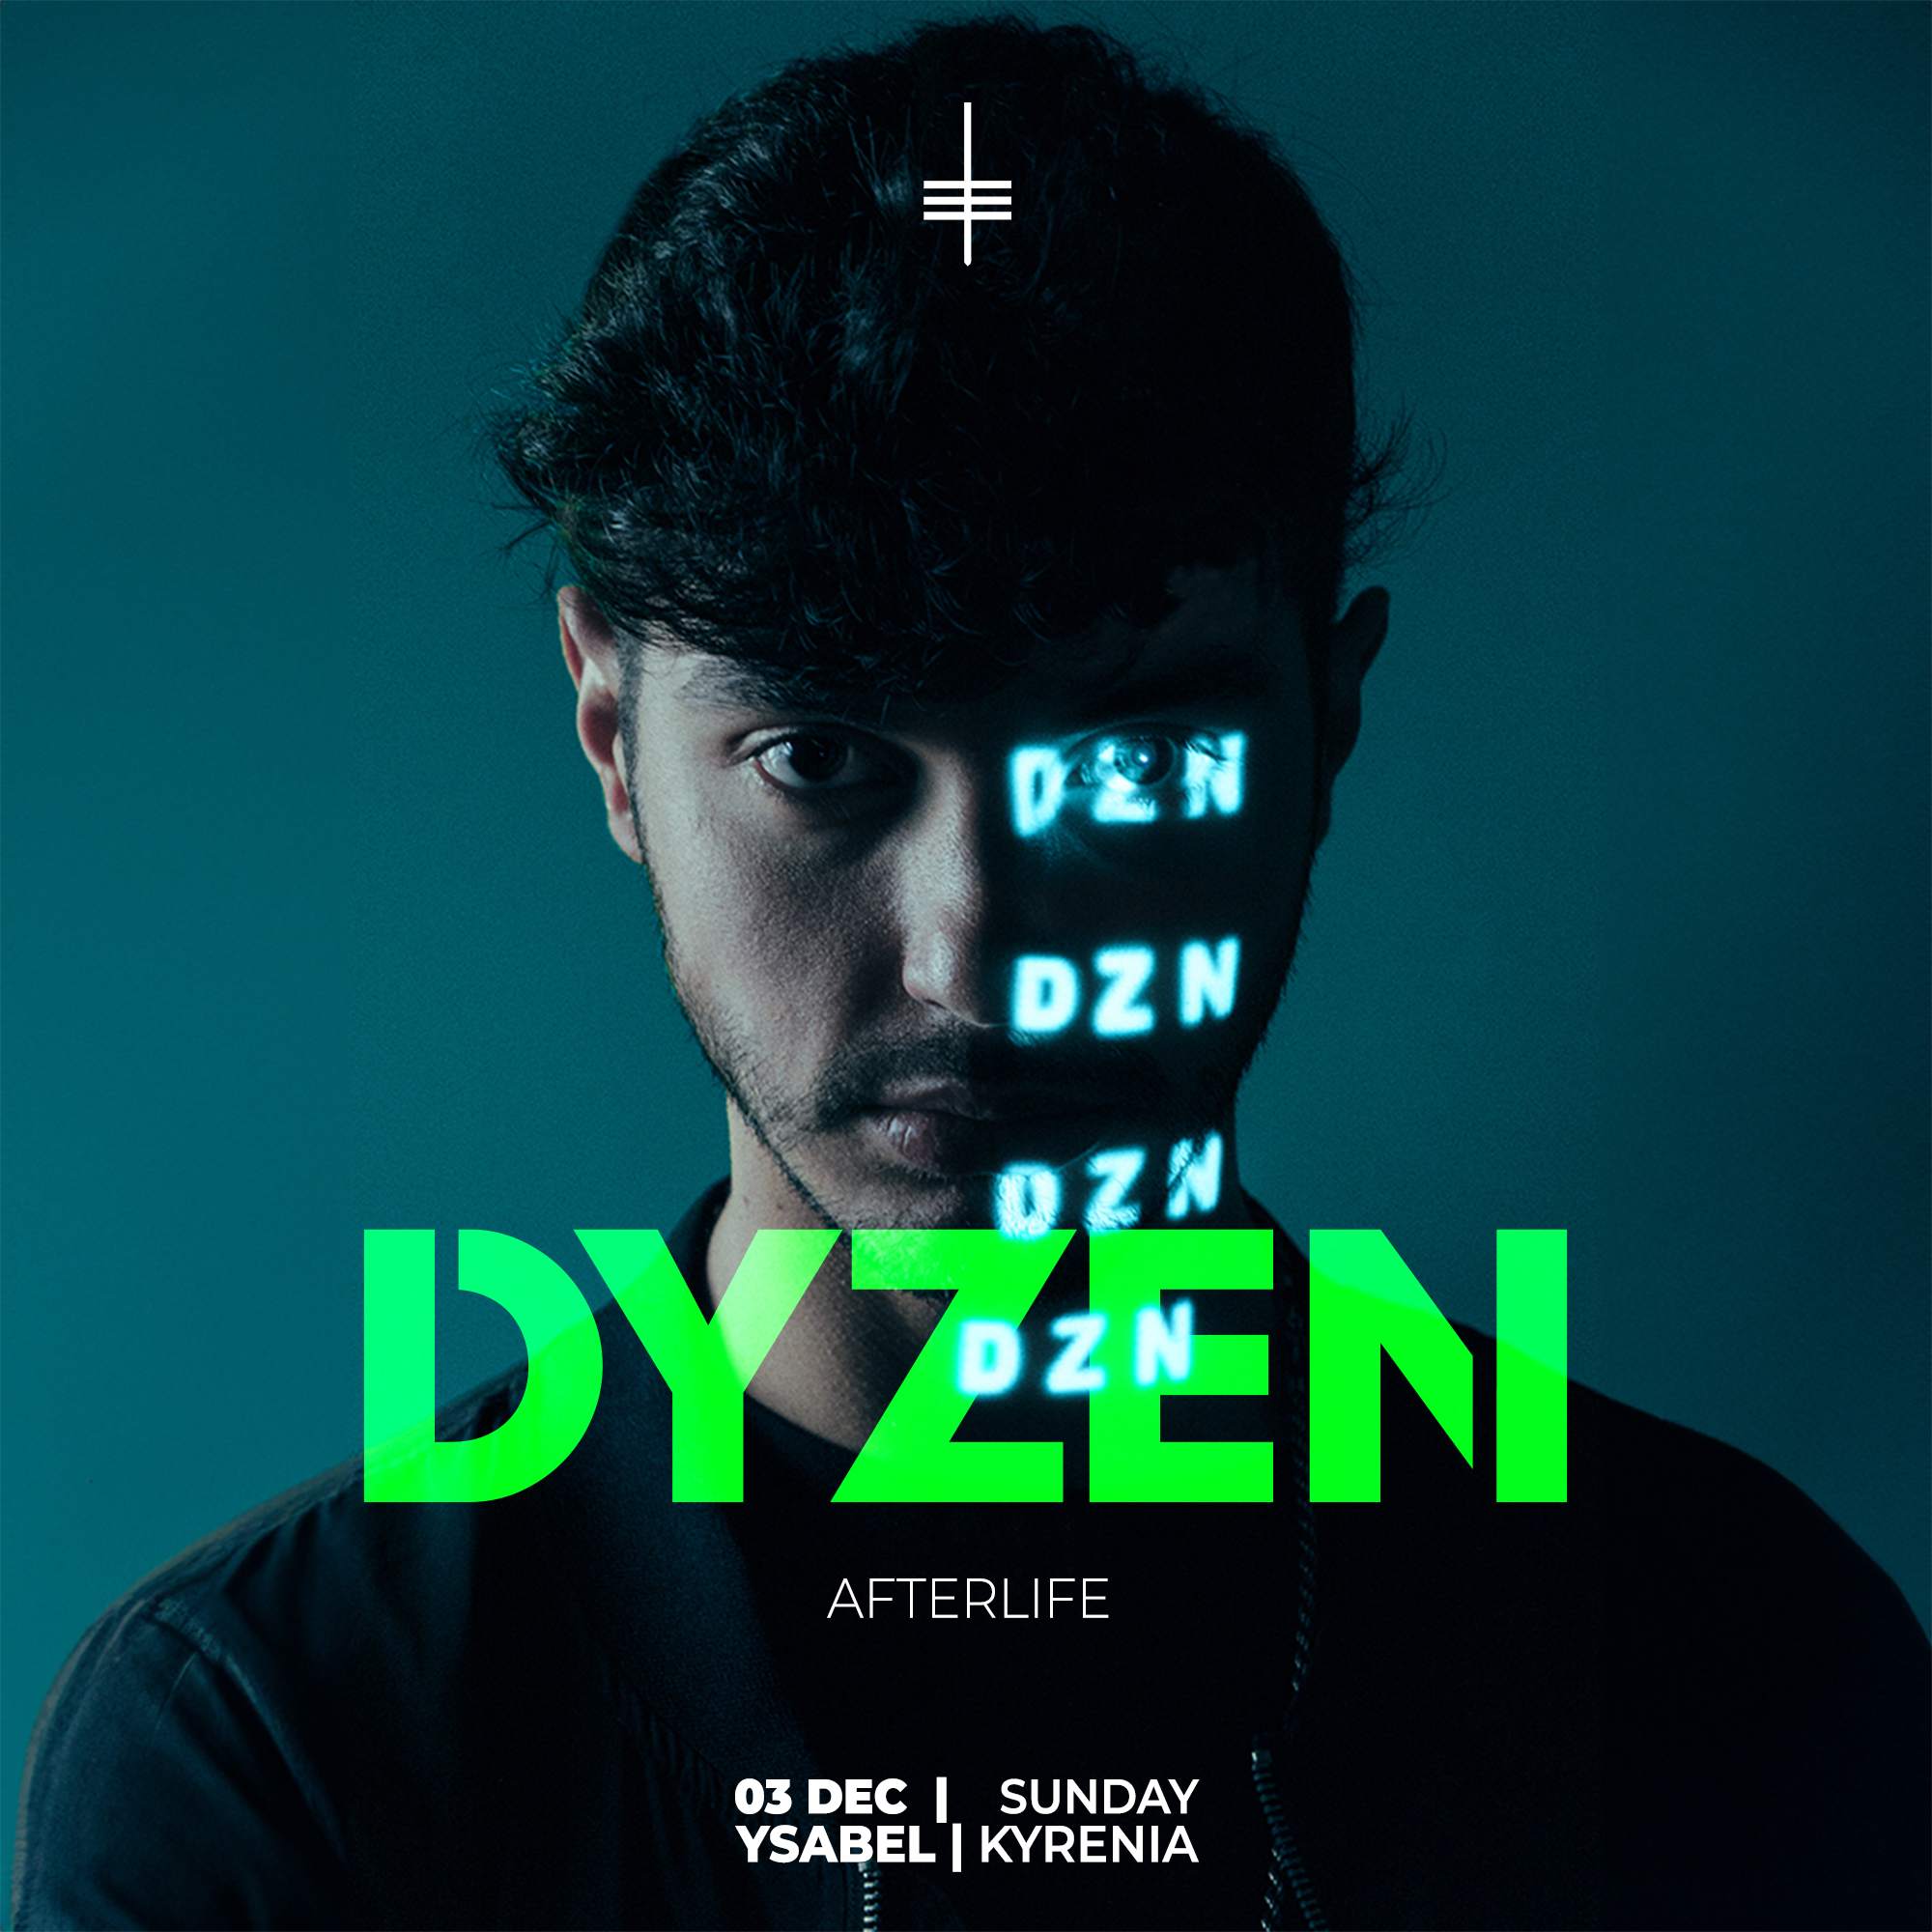 Dyzen by Technoport - フライヤー表